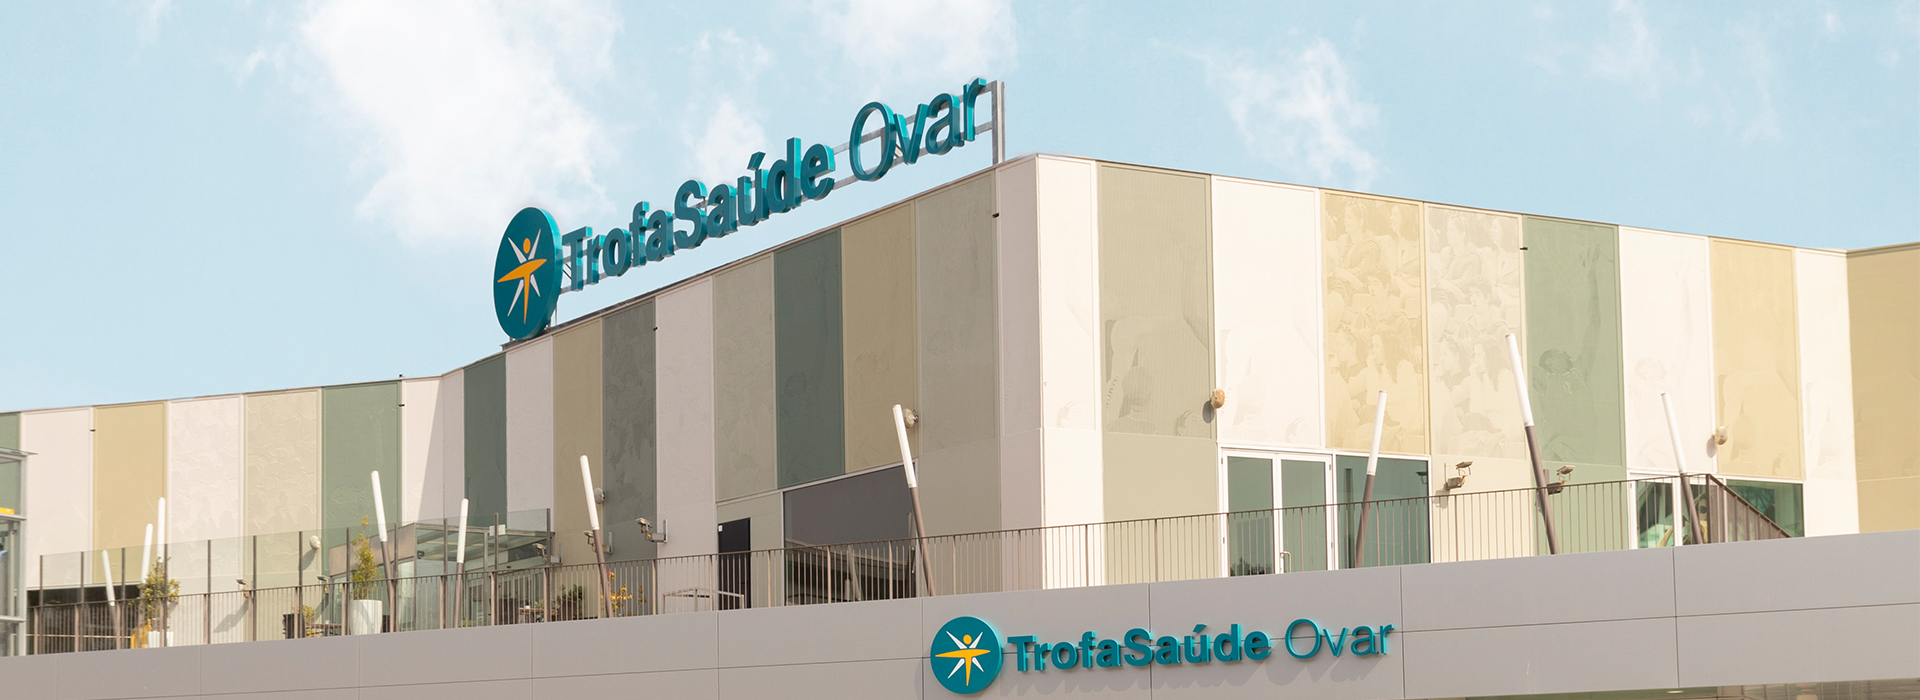 Trofa Saúde Ovar: já abriu no centro comercial Vida Ovar